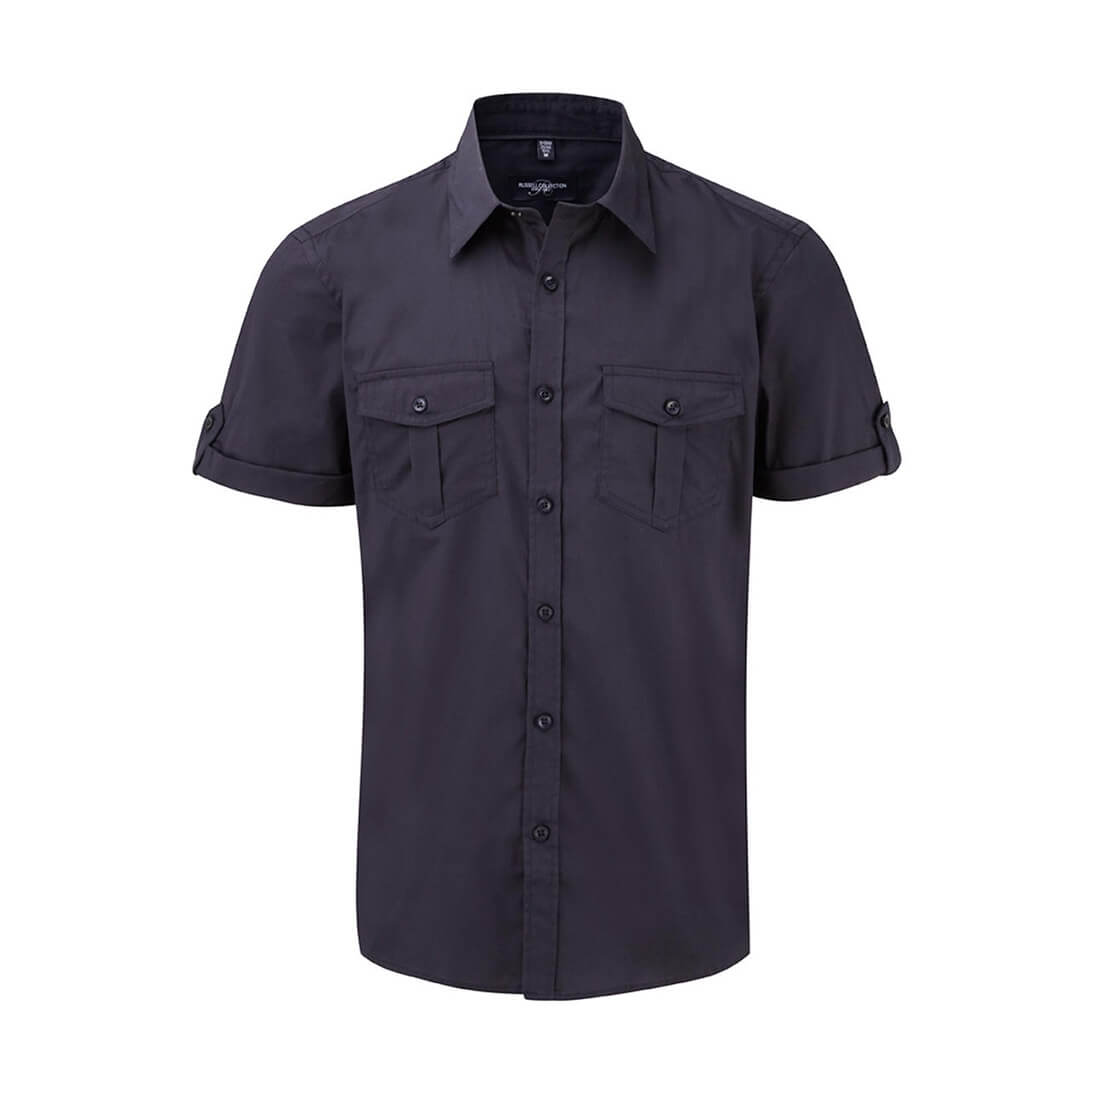 Roll Sleeve Shirt - Les vêtements de protection